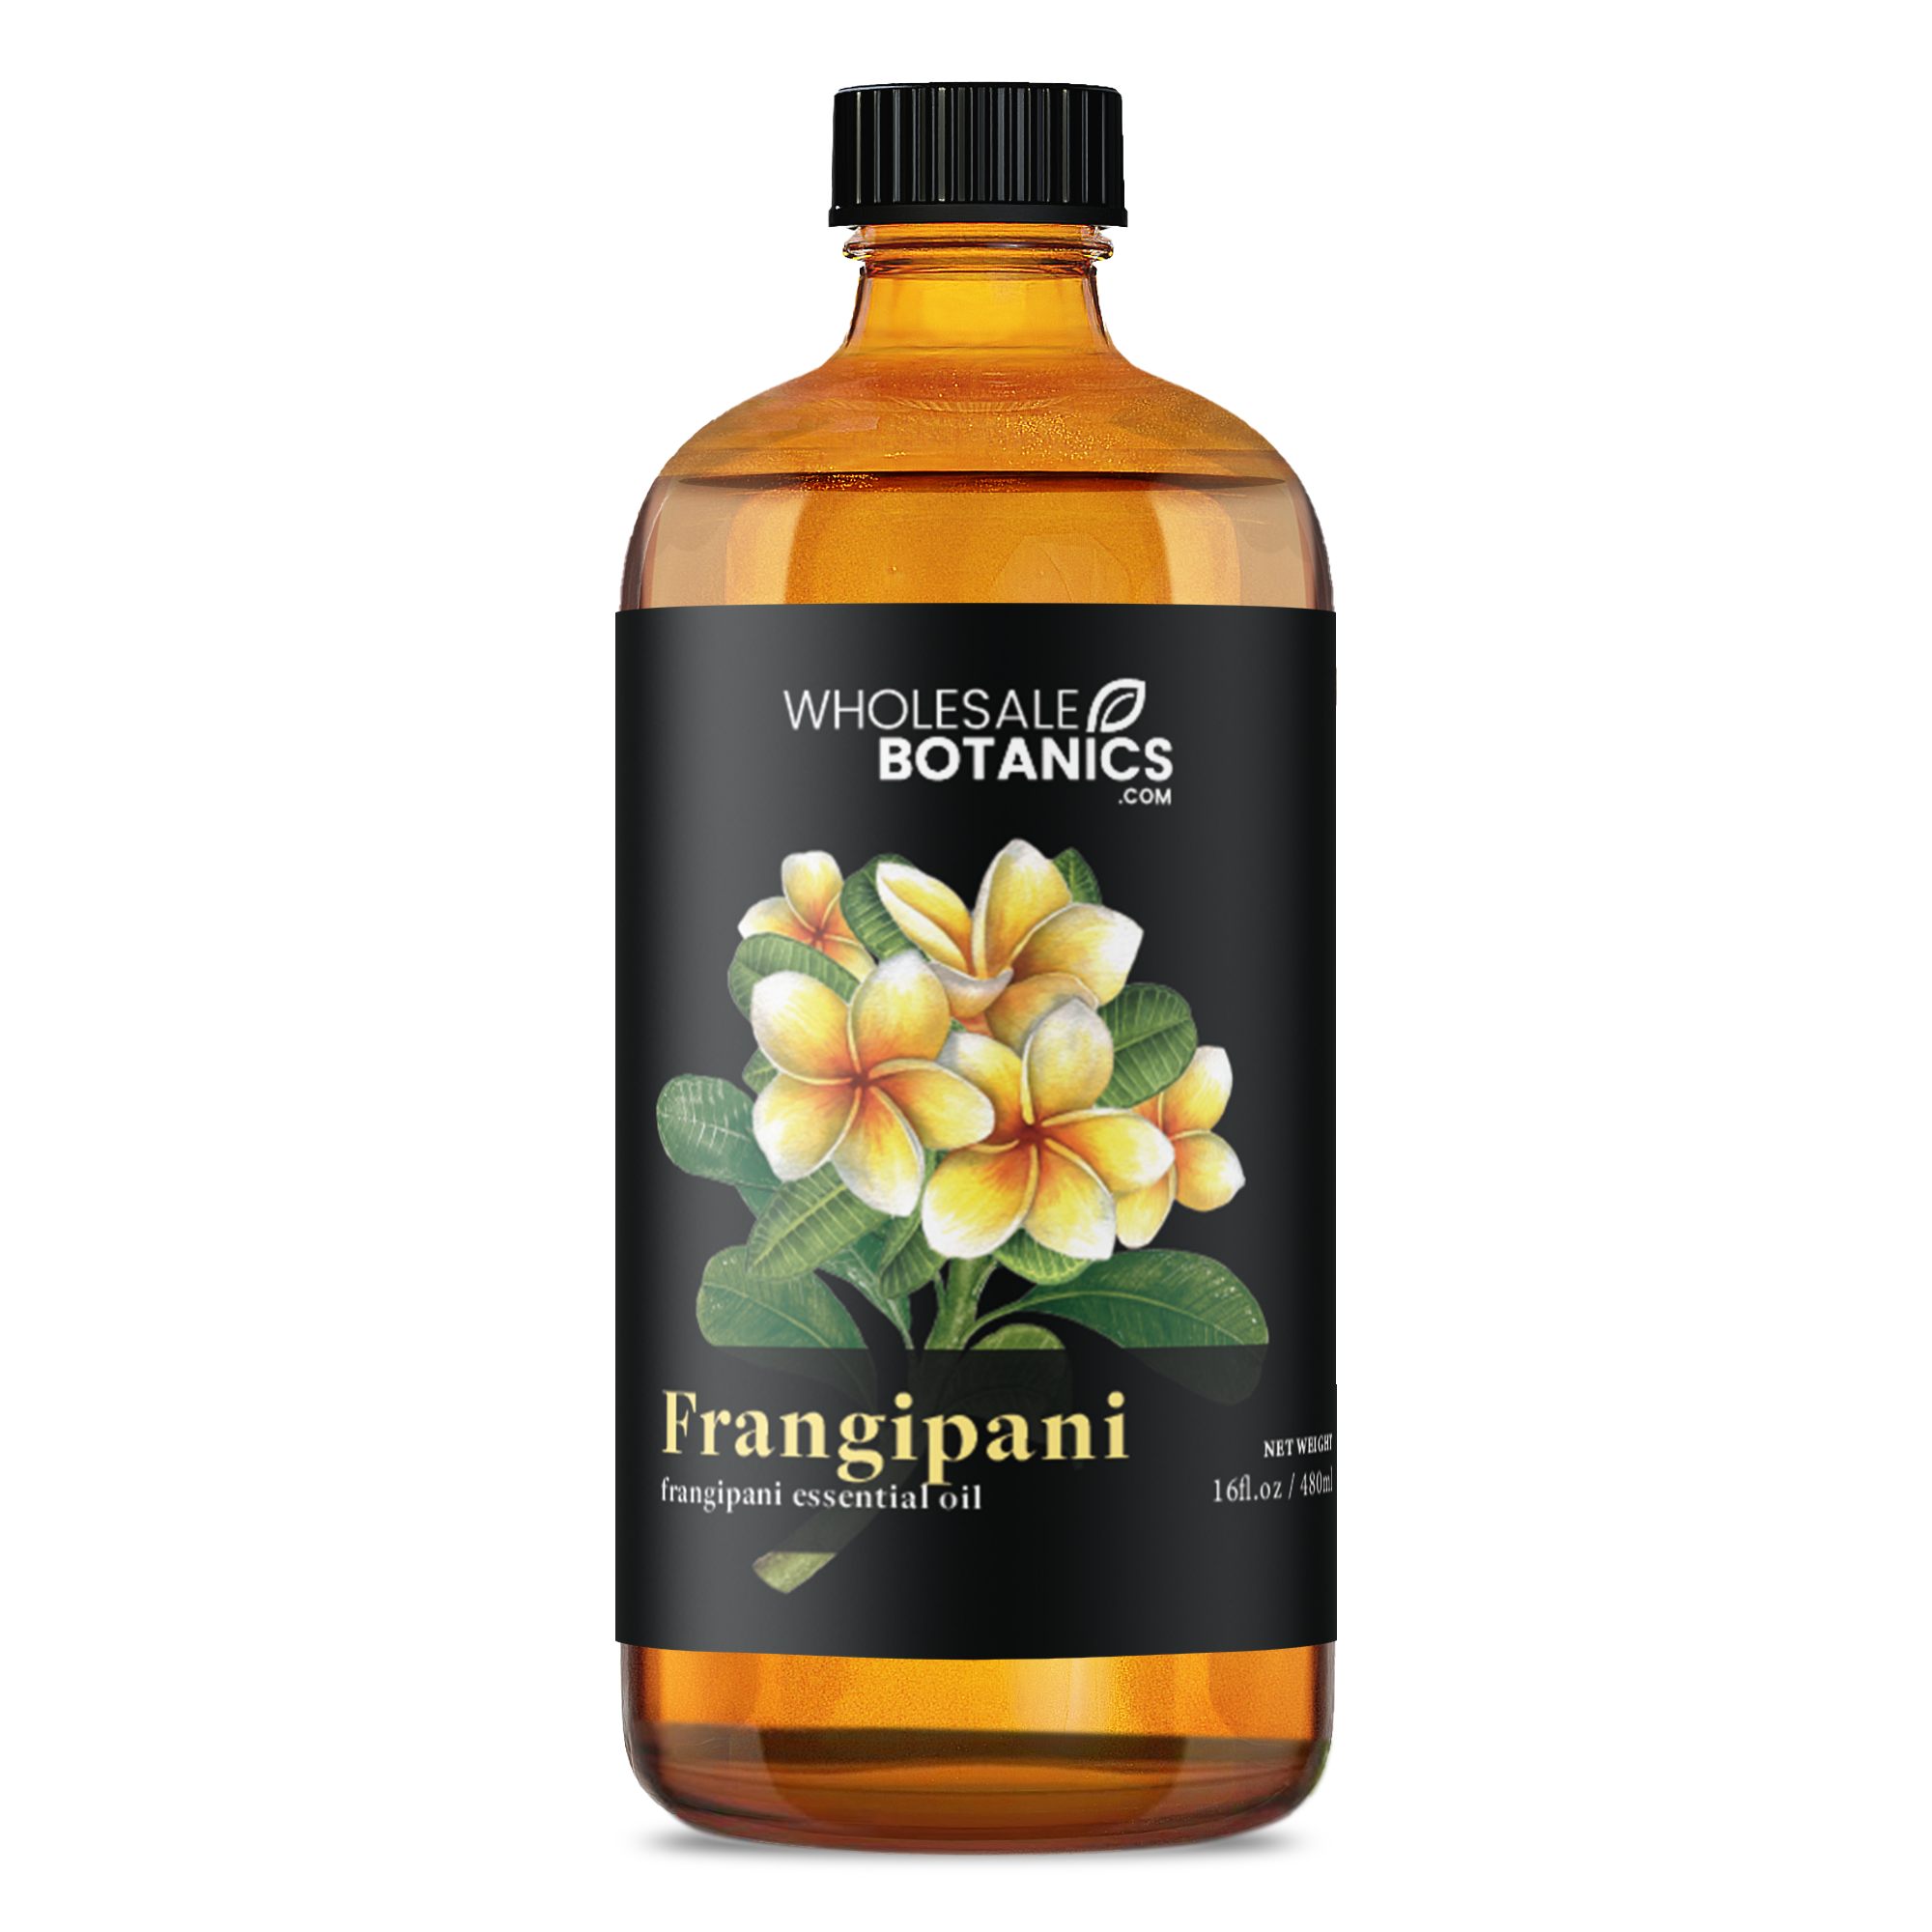 Plumeria Essential Oil (Frangipani) 100% Pure Therapeutic Grade - 1/4 Oz-9 ml (Semi-Solid)